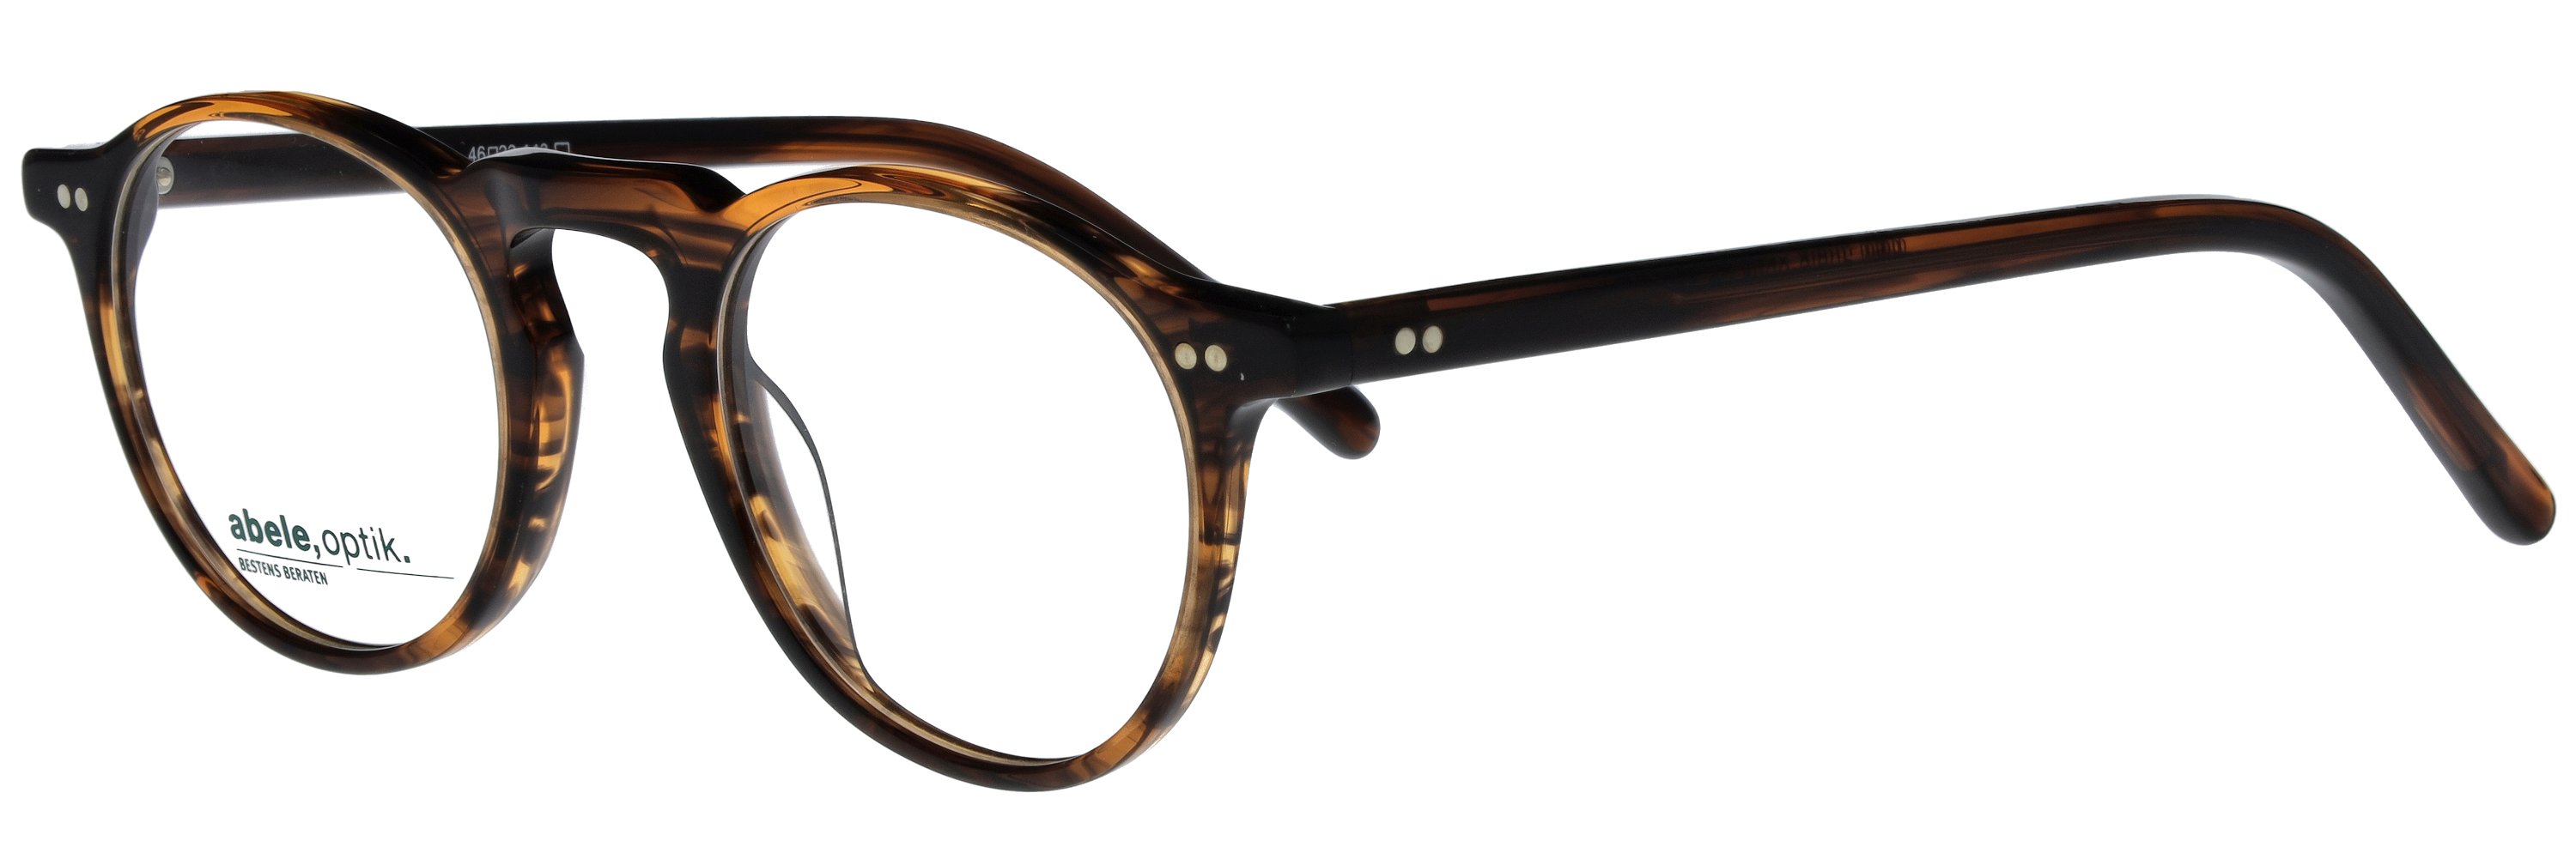 Das Bild zeigt die Korrektionsbrille 147881 von der Marke Abele Optik in havanna